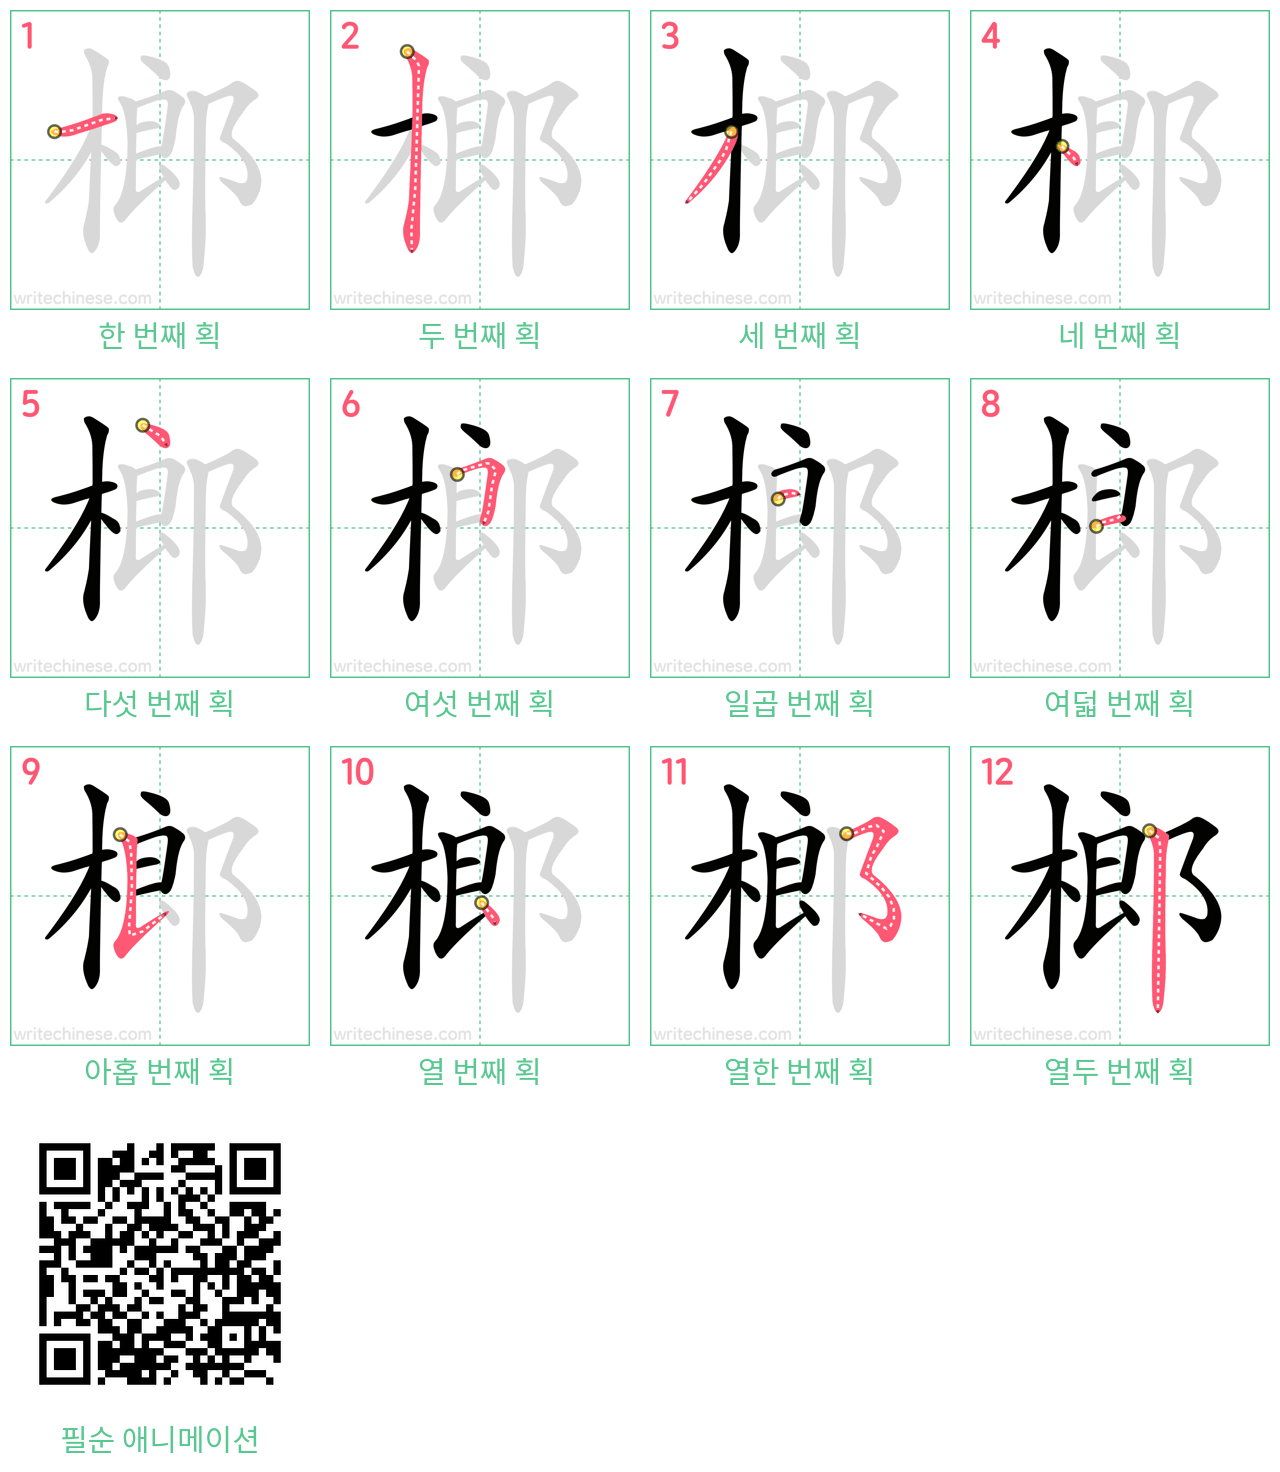 榔 step-by-step stroke order diagrams